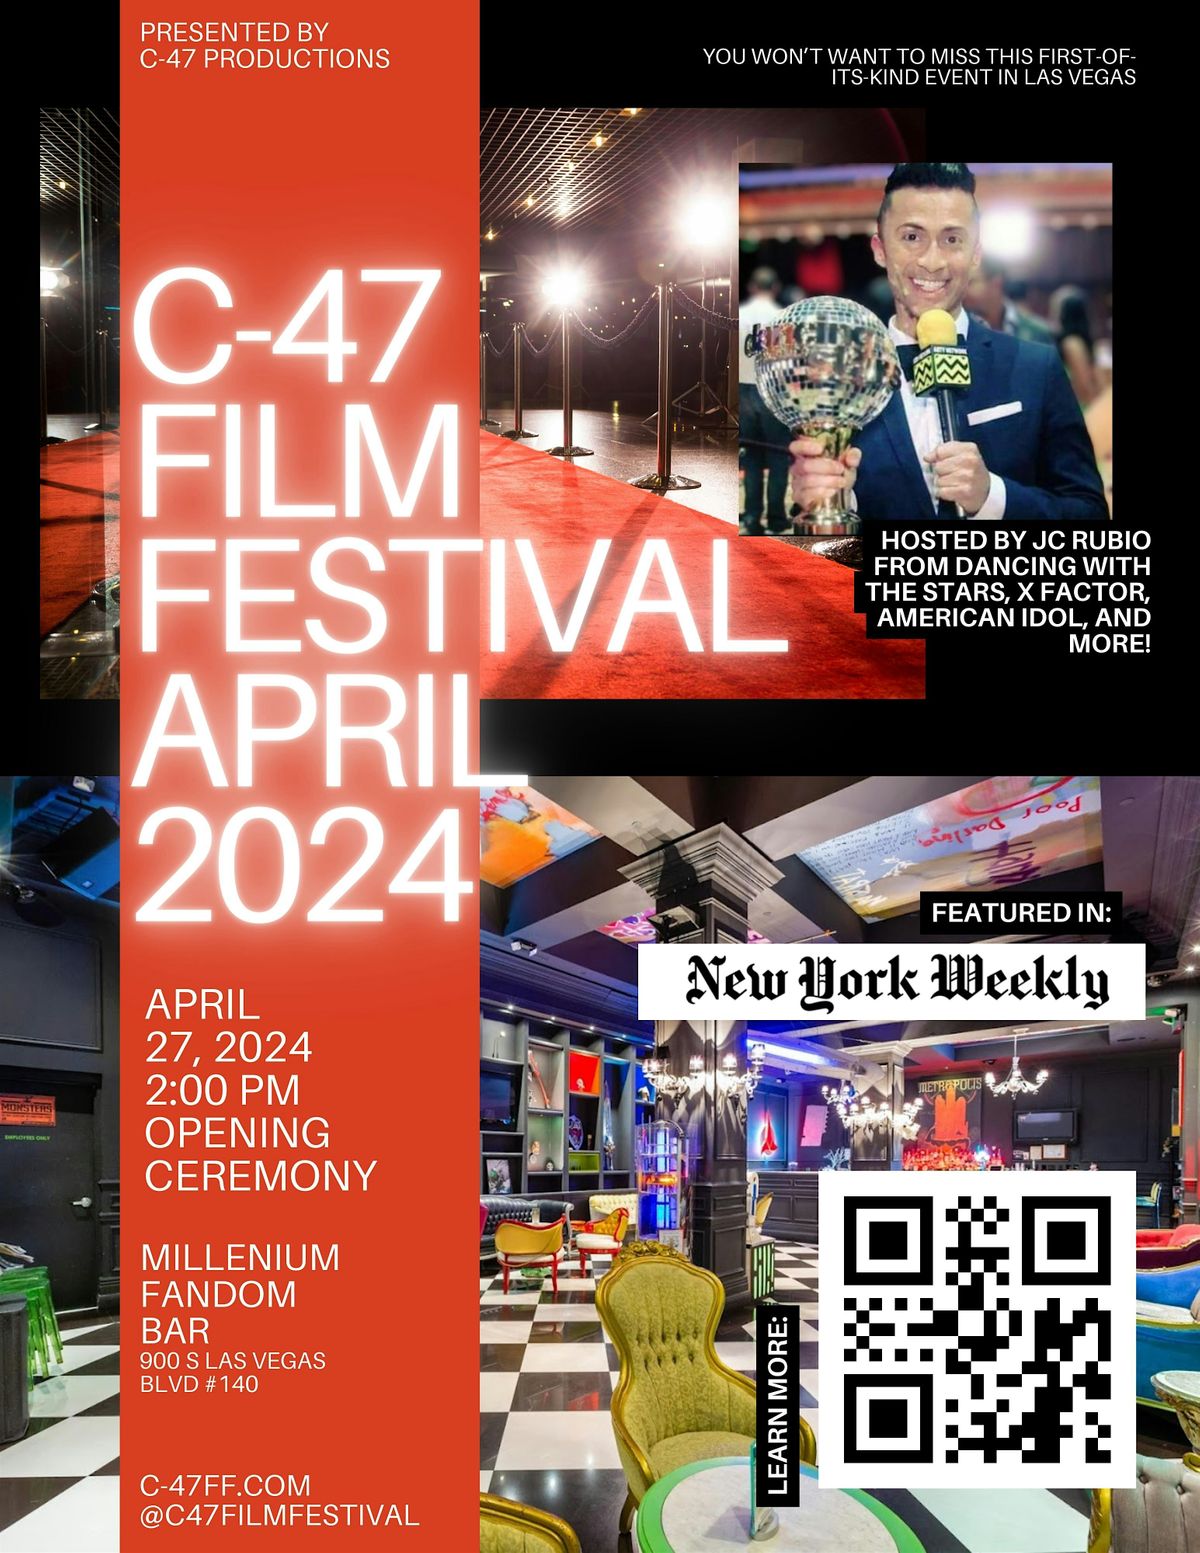 C-47 Film Festival